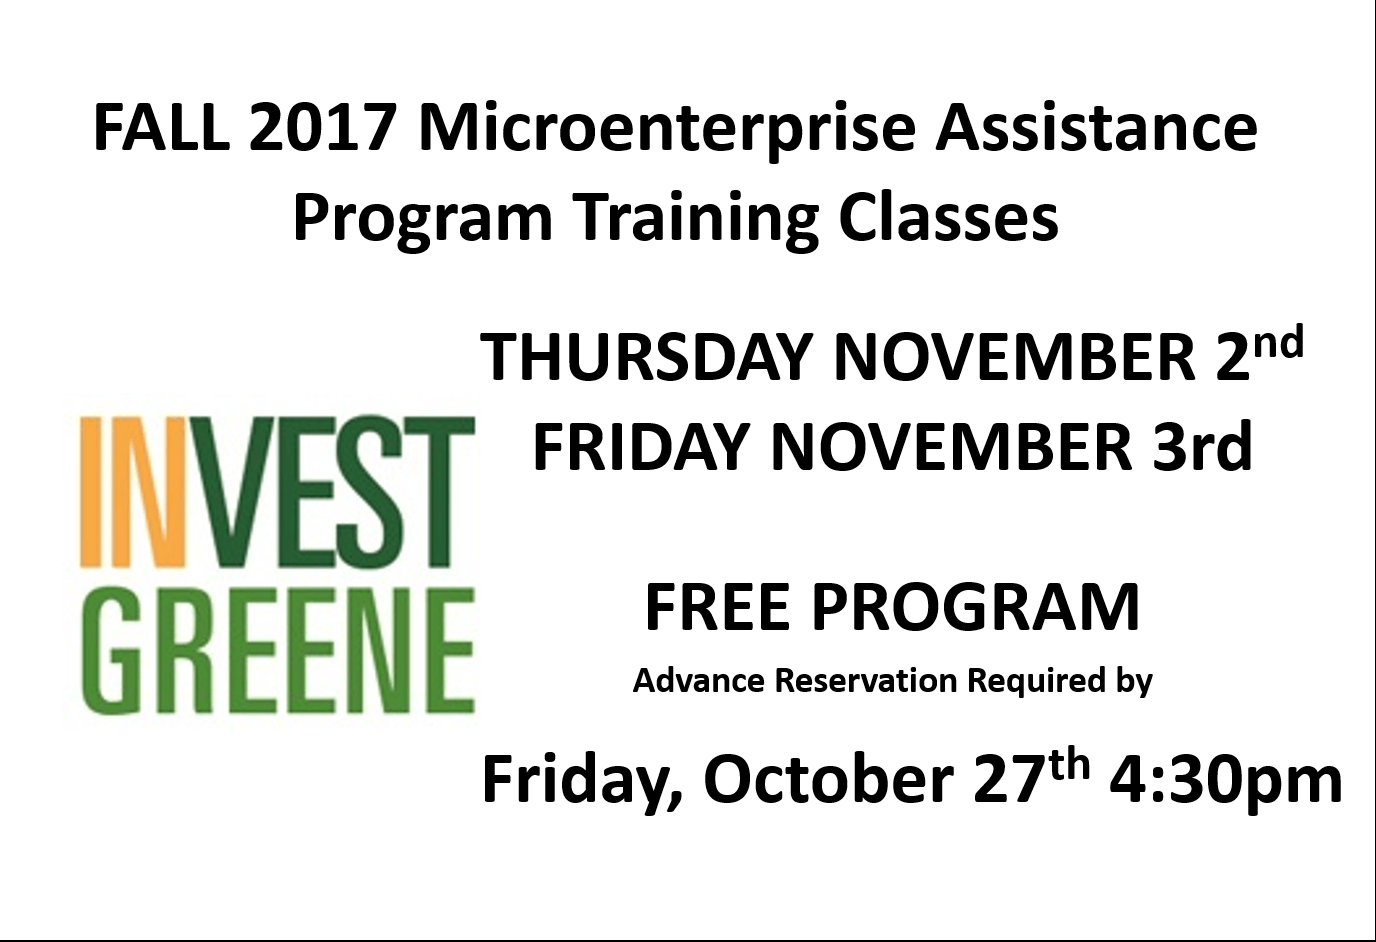 Fall 2017 Microenterprise Assistance Program Training Classes November 2nd & 3rd